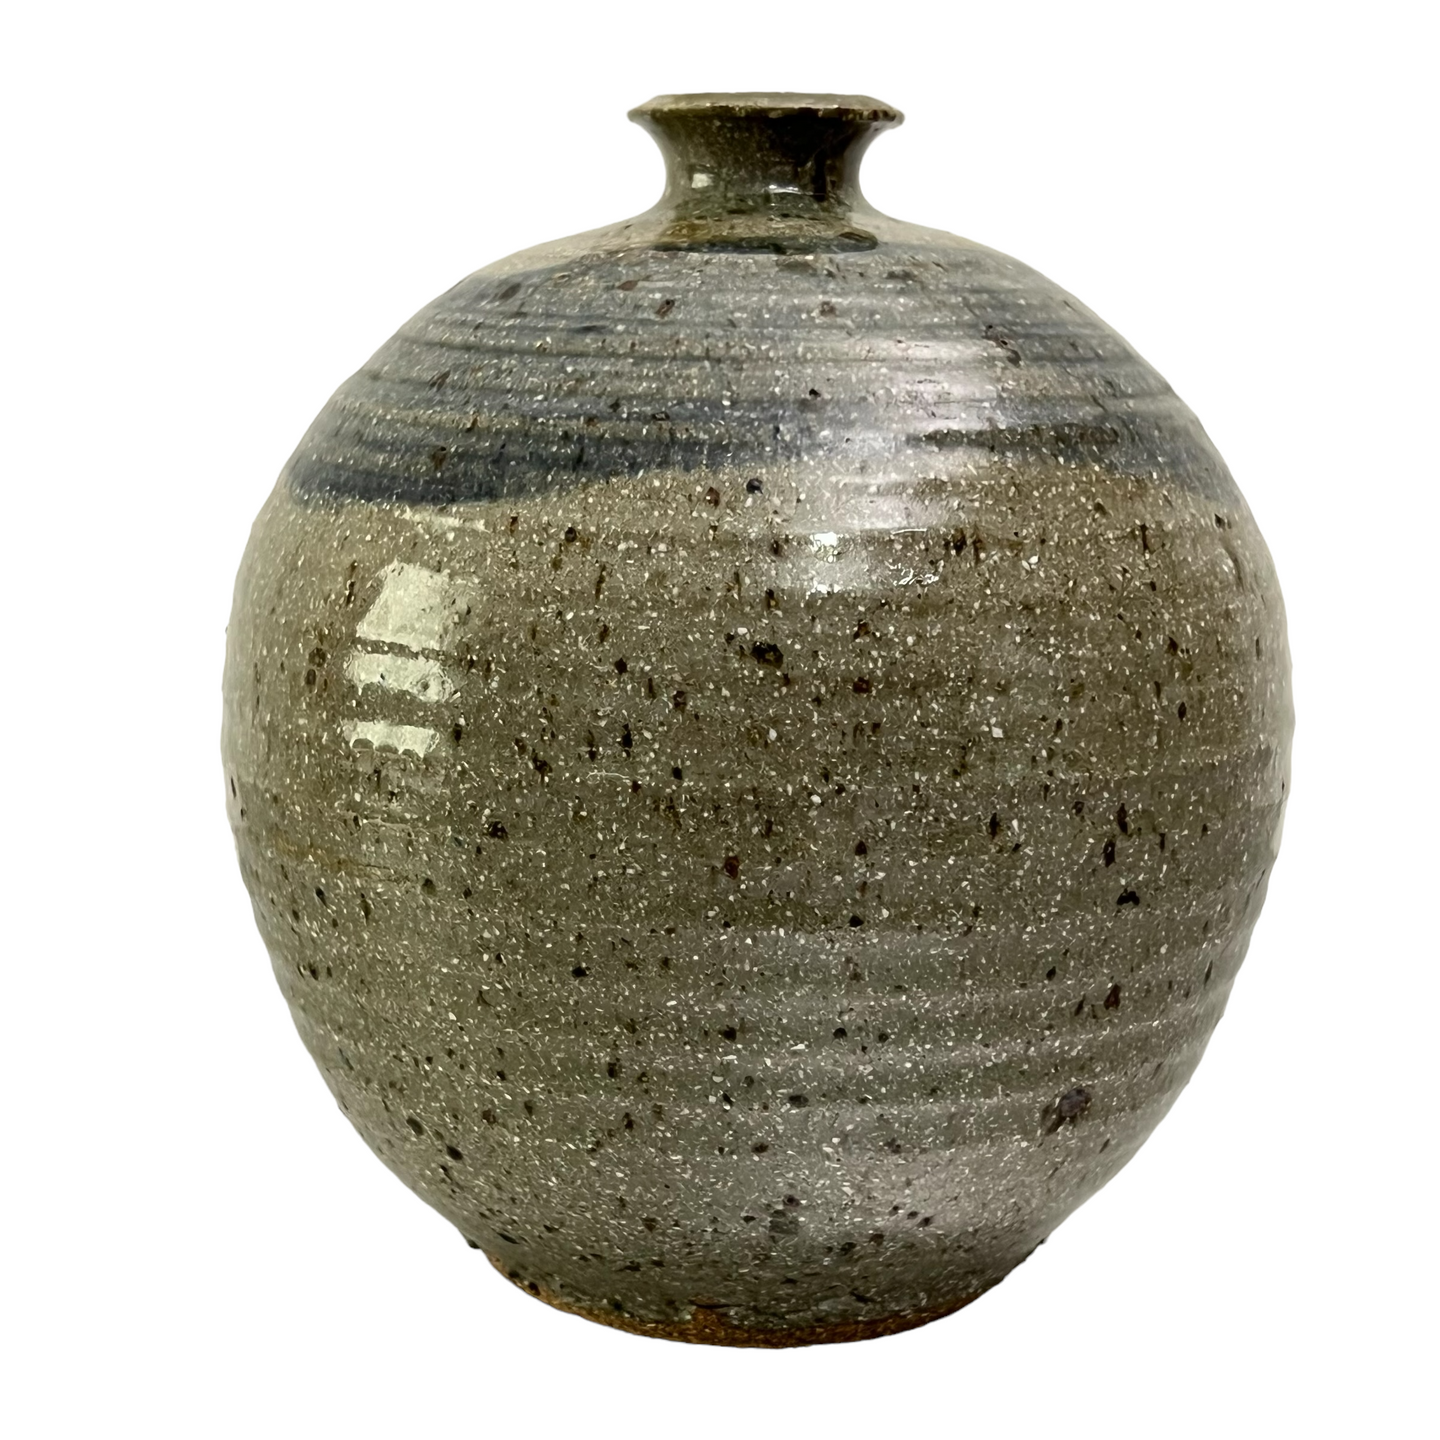 Signed Round Glazed Stoneware Pottery Vase